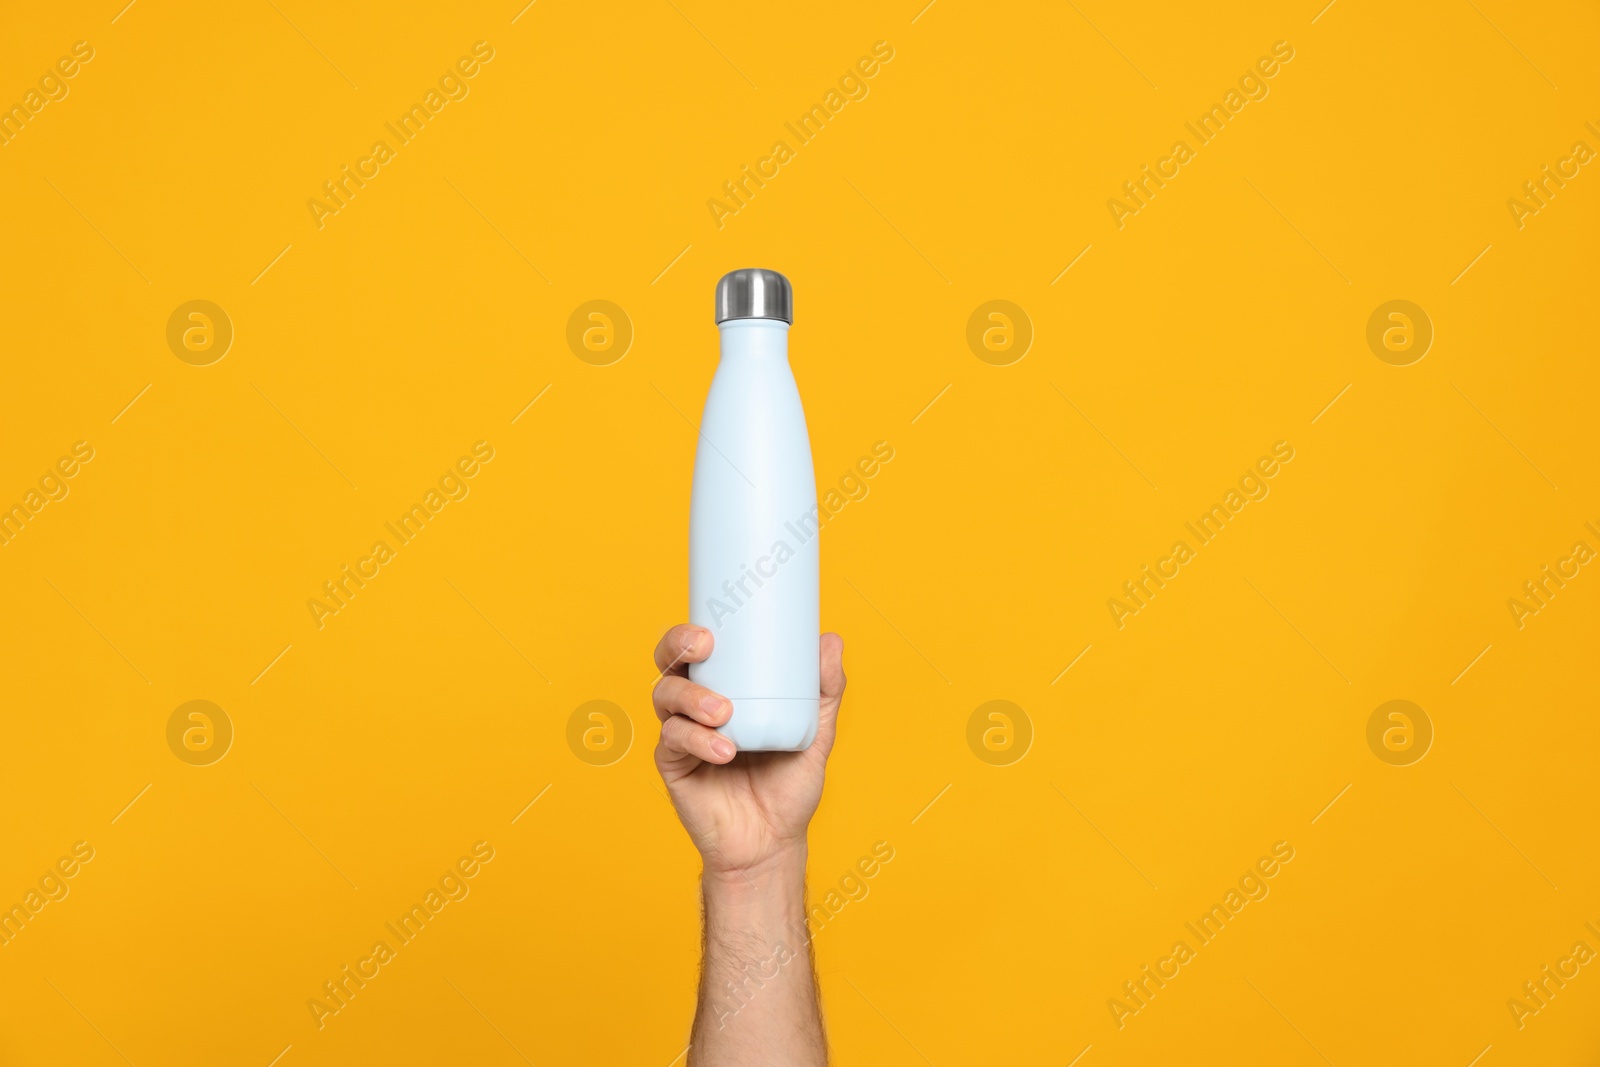 Photo of Man holding thermo bottle on orange background, closeup